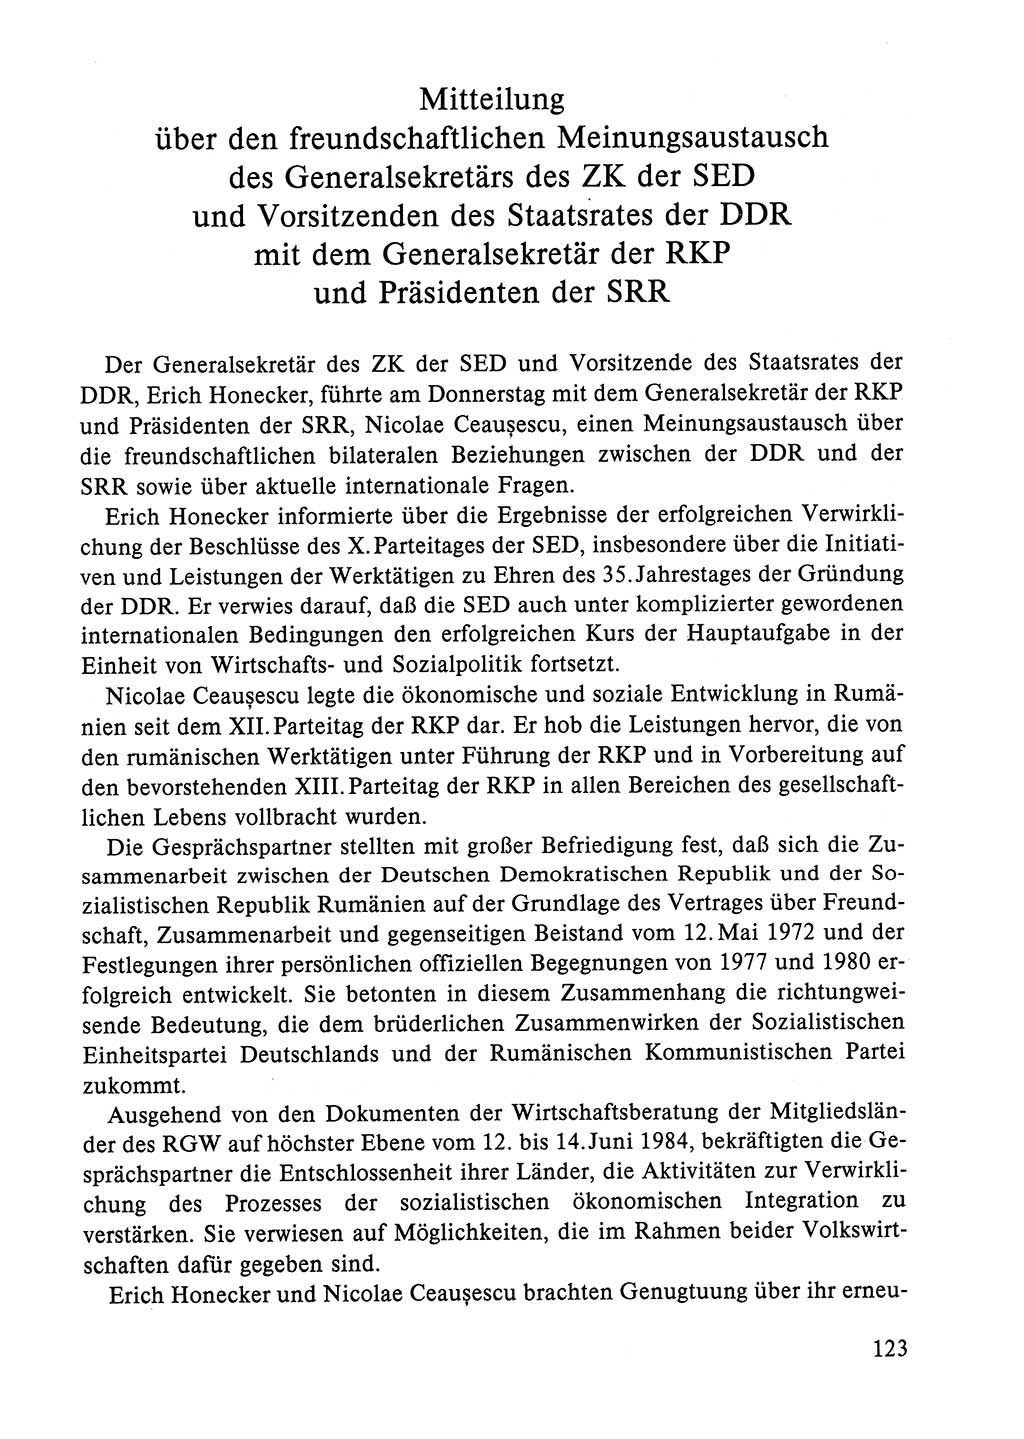 Dokumente der Sozialistischen Einheitspartei Deutschlands (SED) [Deutsche Demokratische Republik (DDR)] 1984-1985, Seite 304 (Dok. SED DDR 1984-1985, S. 304)